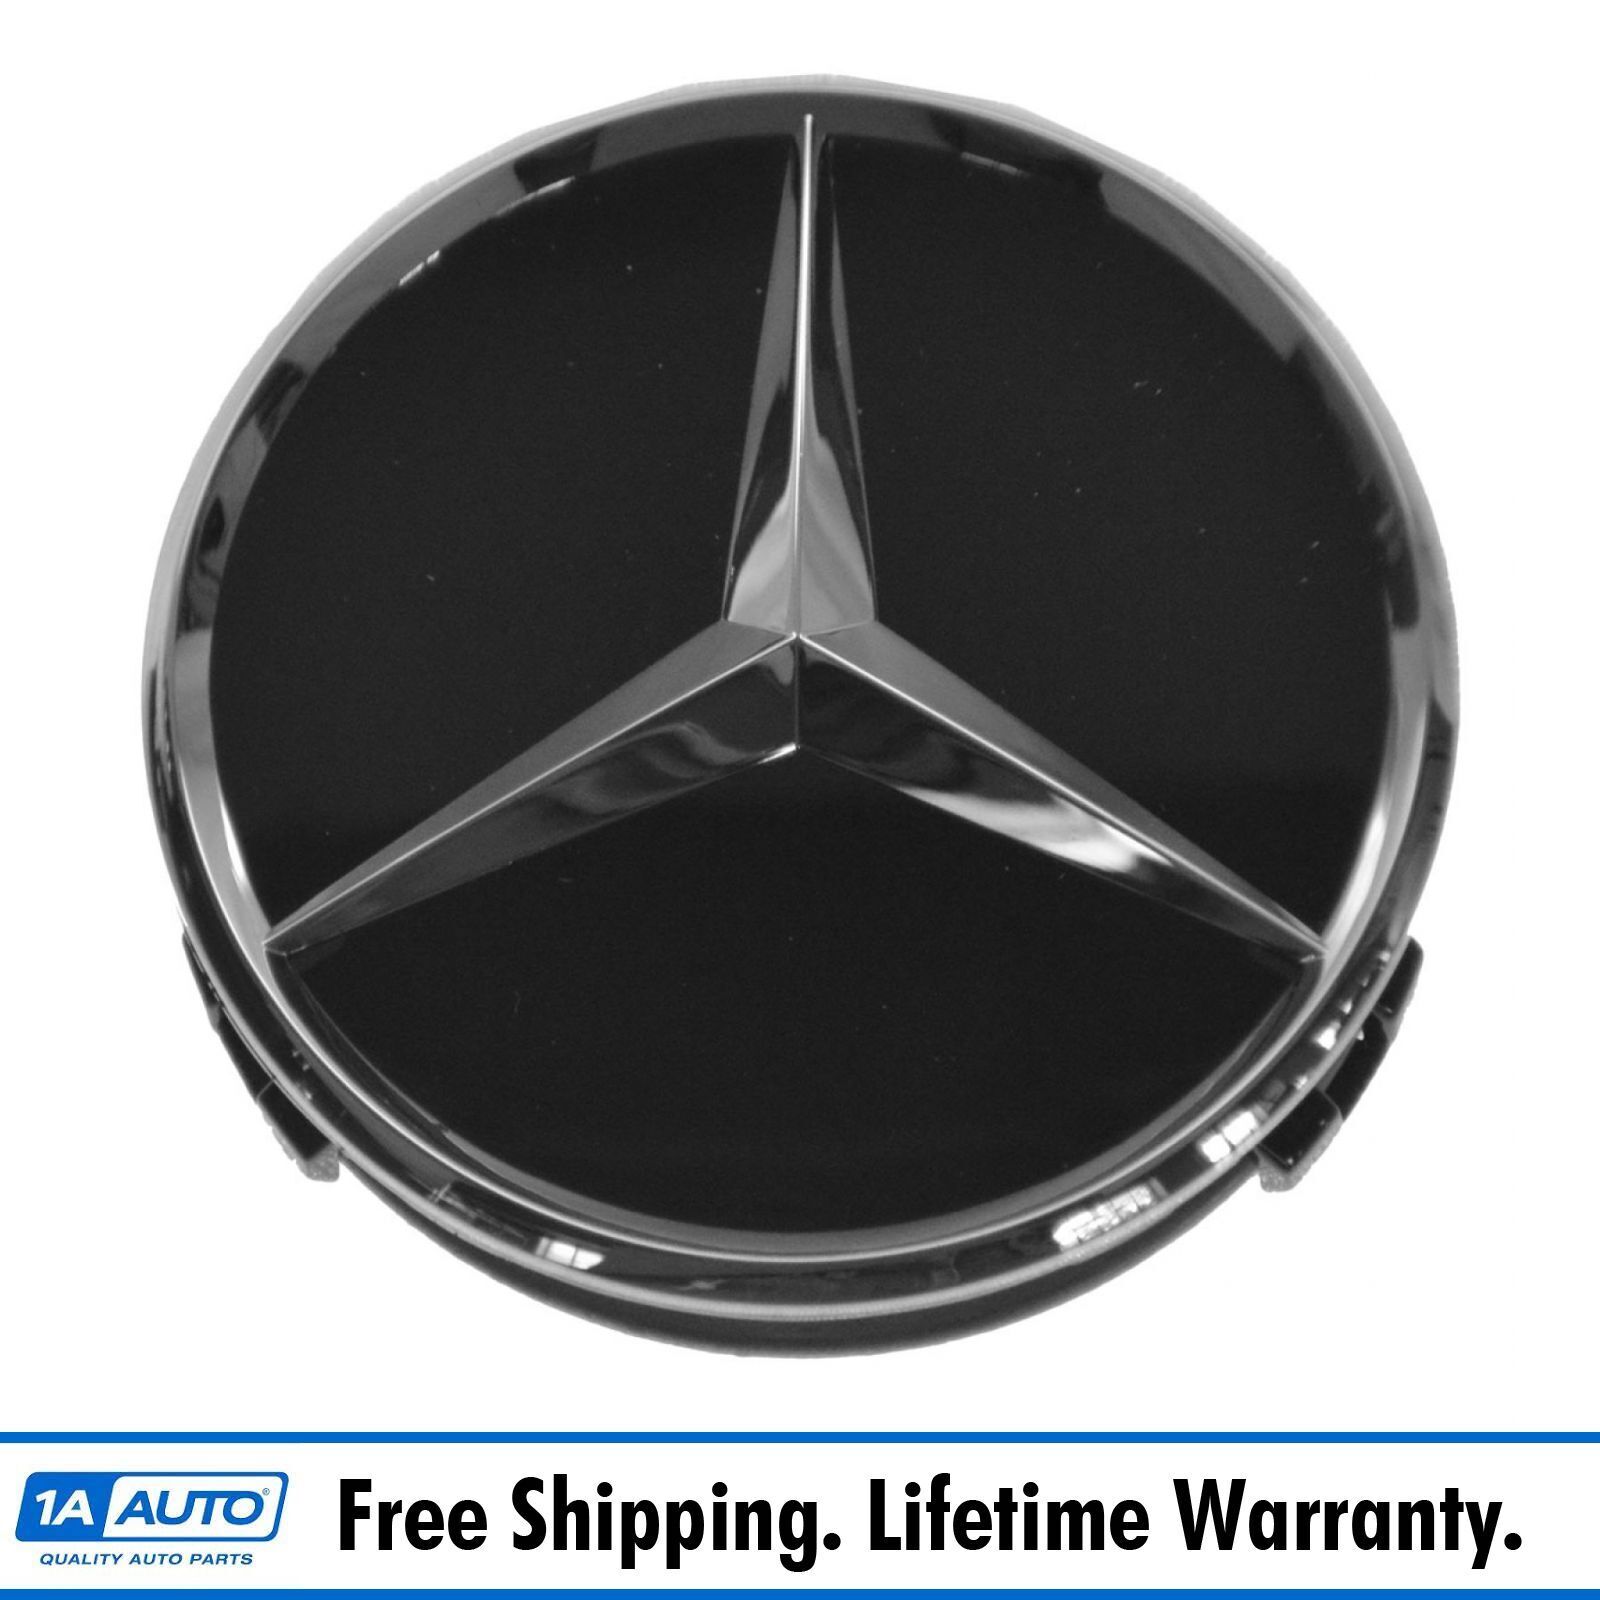 OEM Raised Chrome & Black Wheel Center Cap for Mercedes Benz New